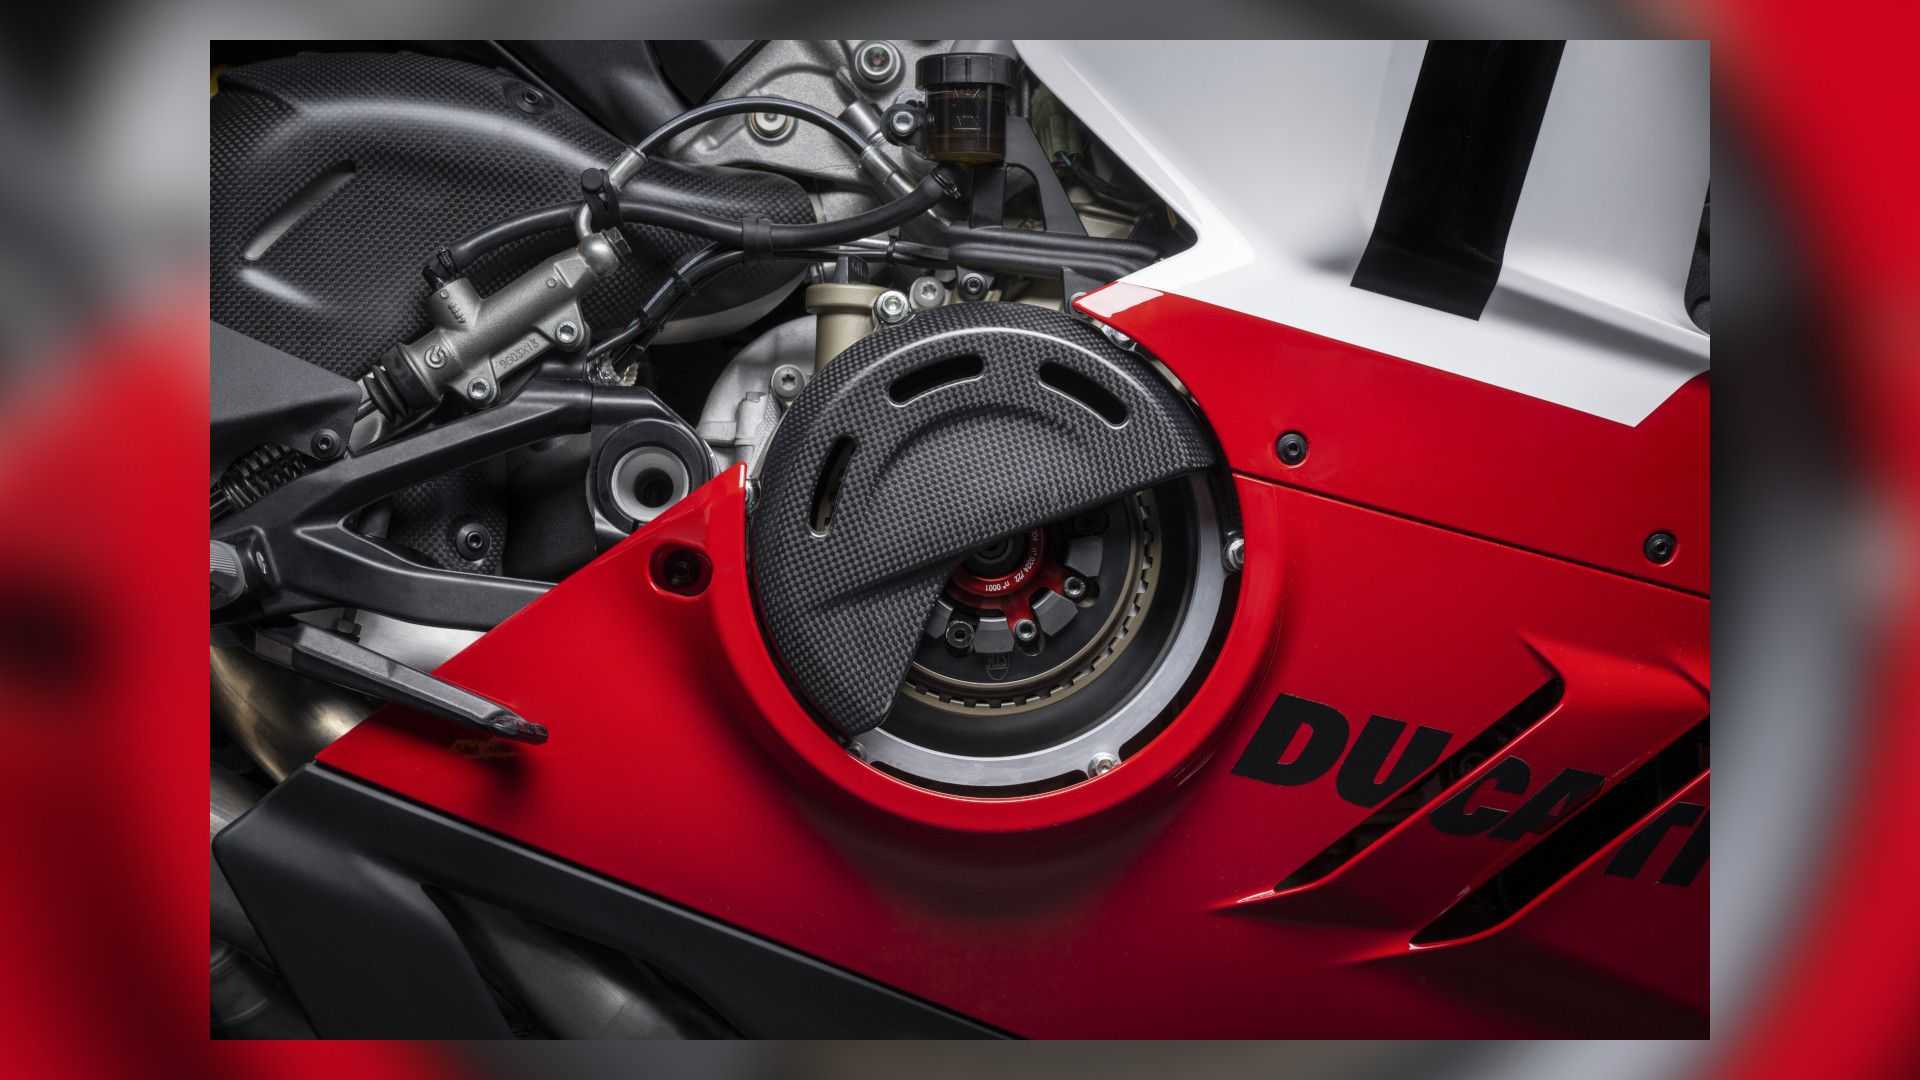 Ducati ra mắt siêu phẩm Panigale V4 R 2023 bản nâng cấp hoàn toàn mới - Ảnh 1.